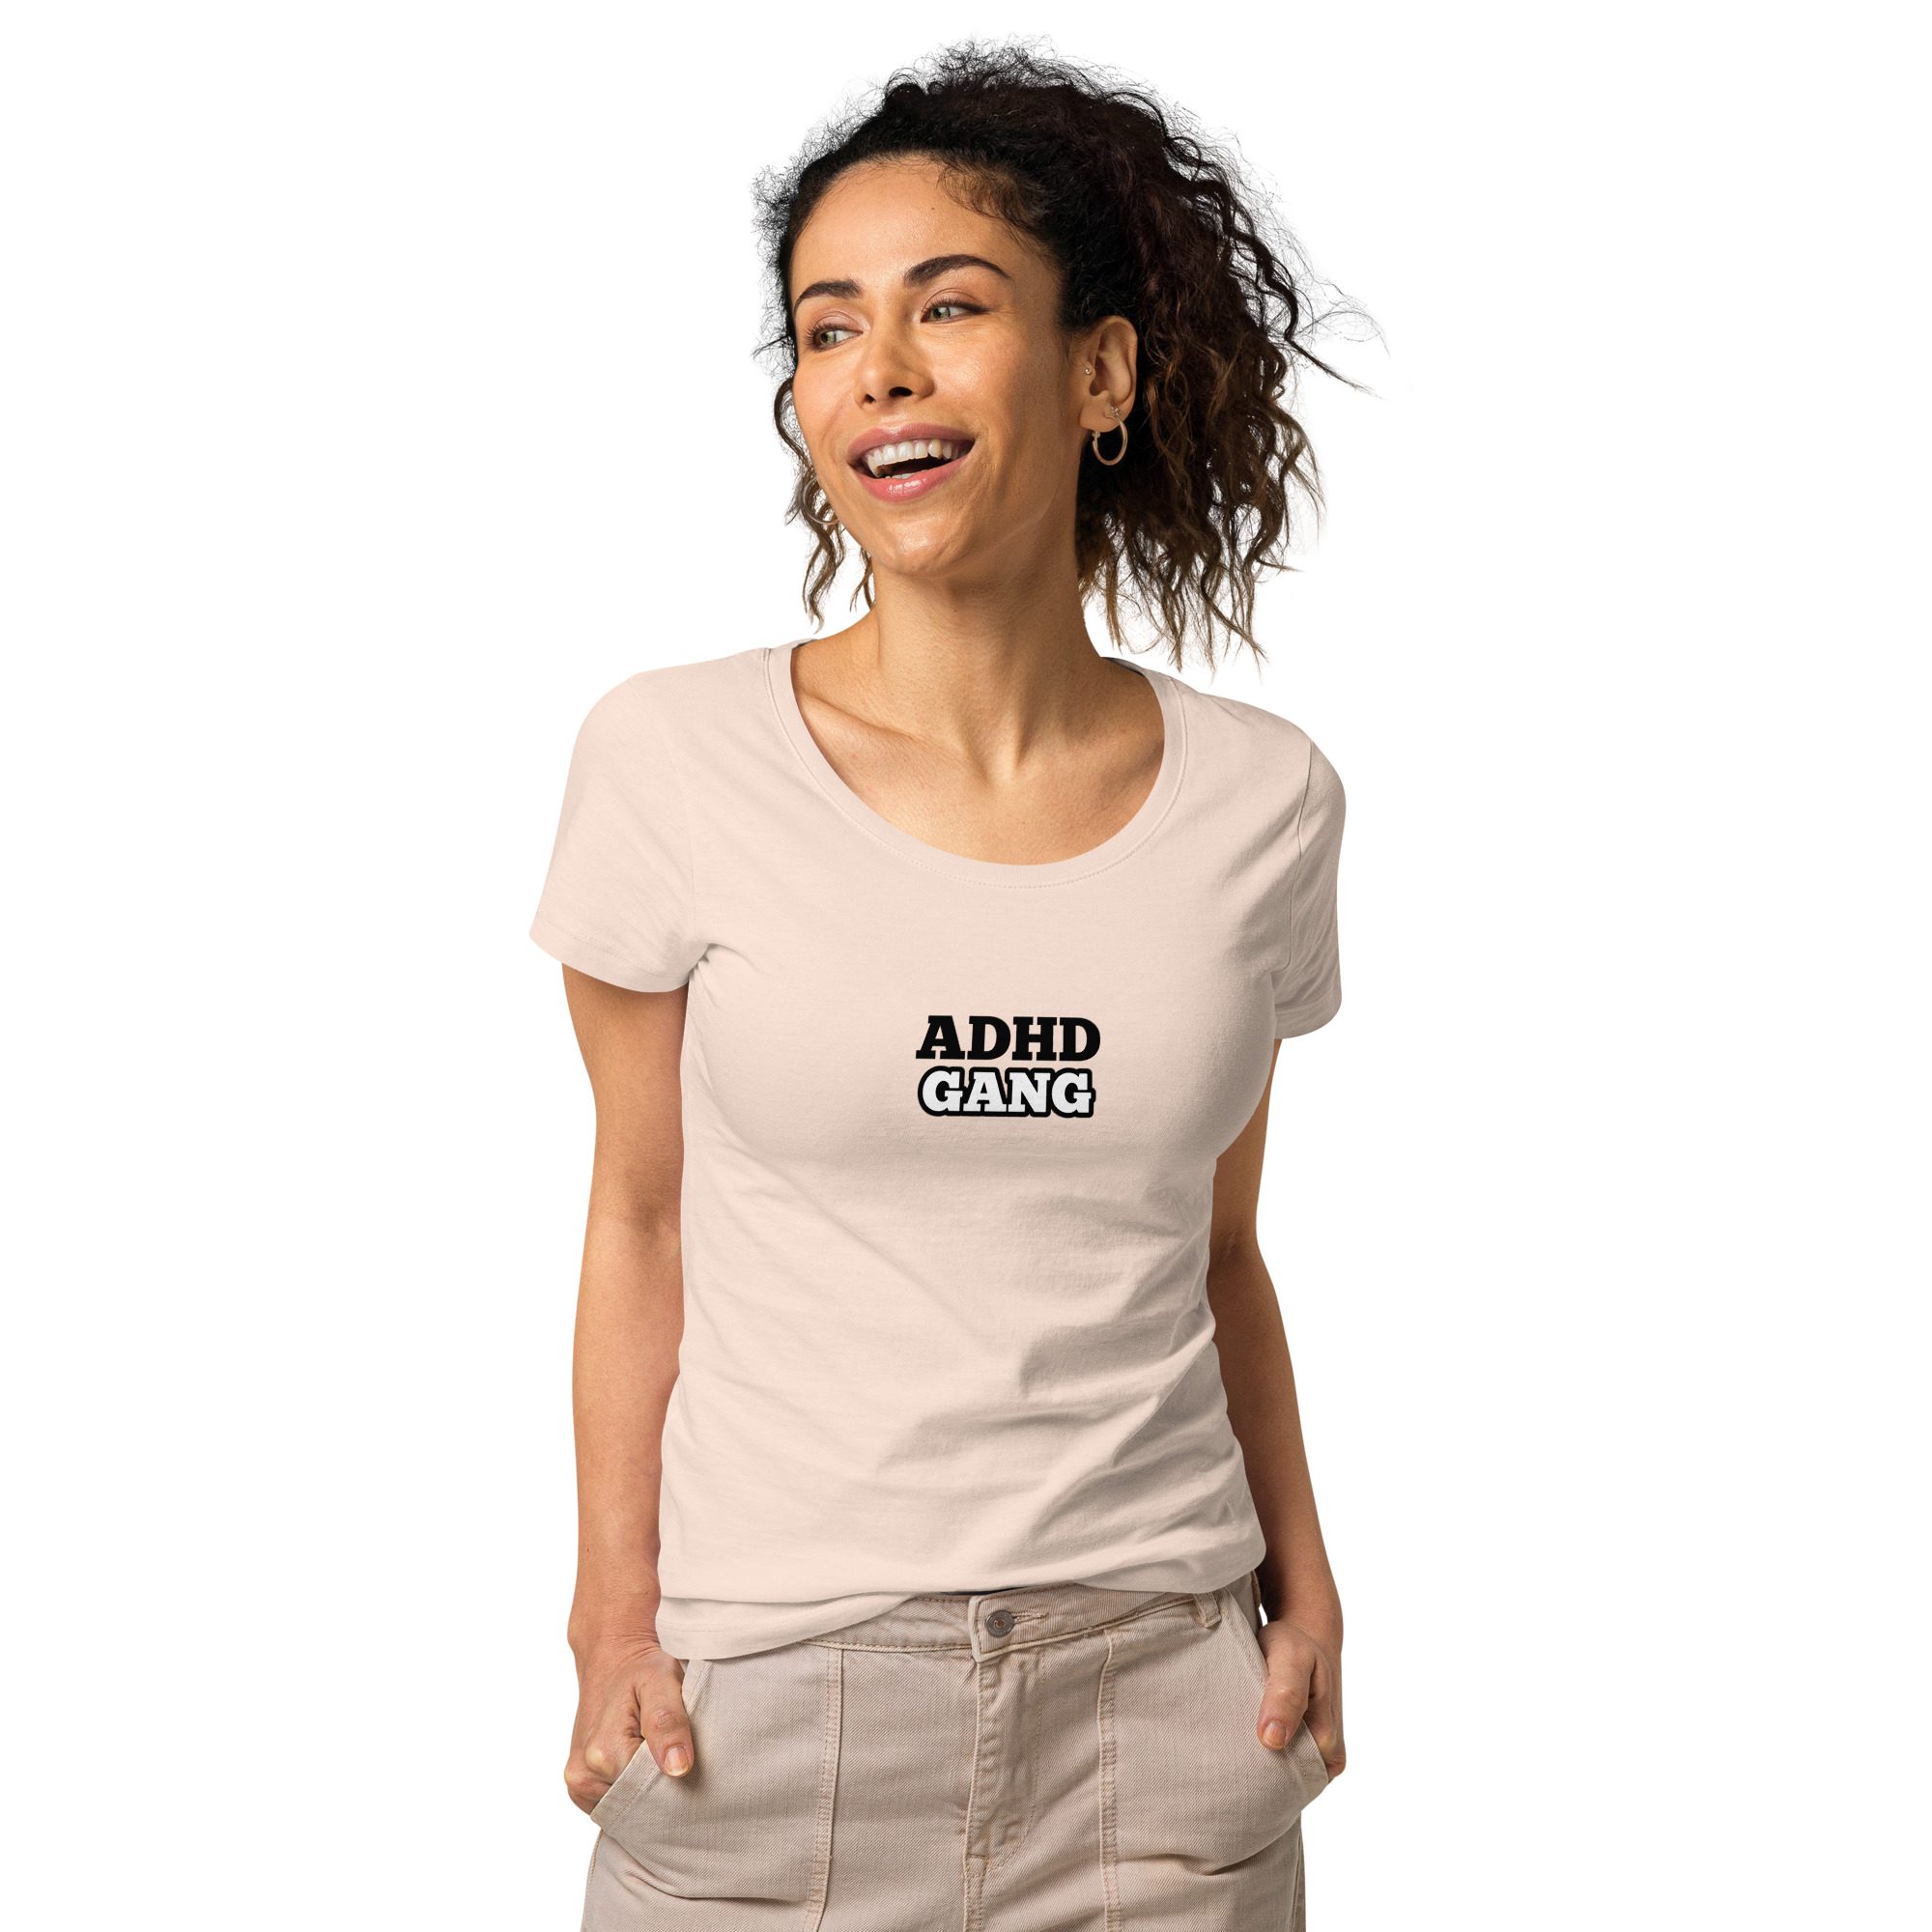 ADHD Gang Women’s Organic T-shirt